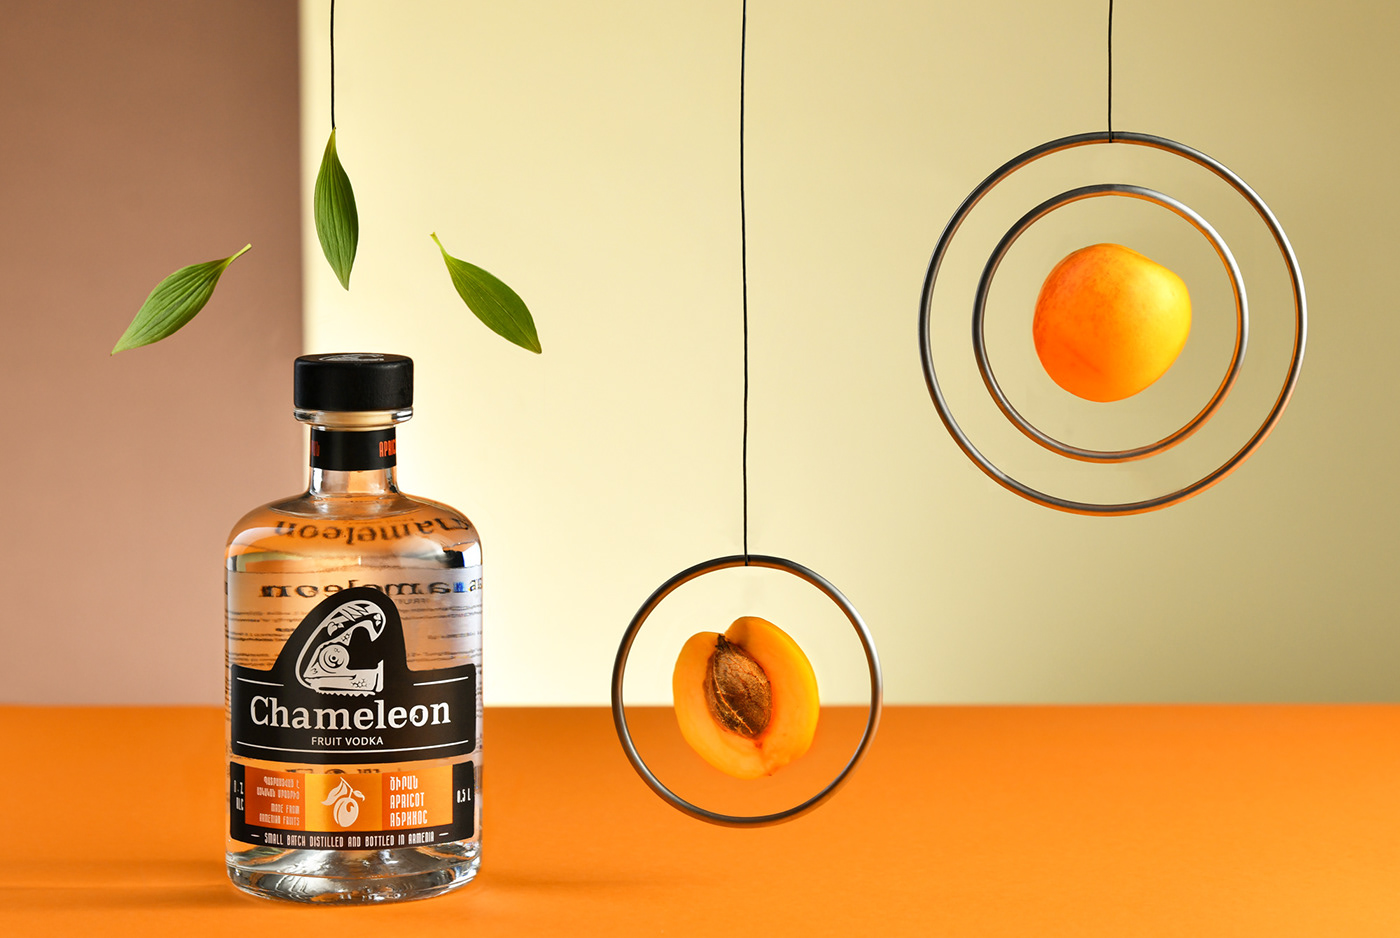 graphic design  branding  Packaging logo chameleon Fruit Vodka bottle ILLUSTRATION  MARog